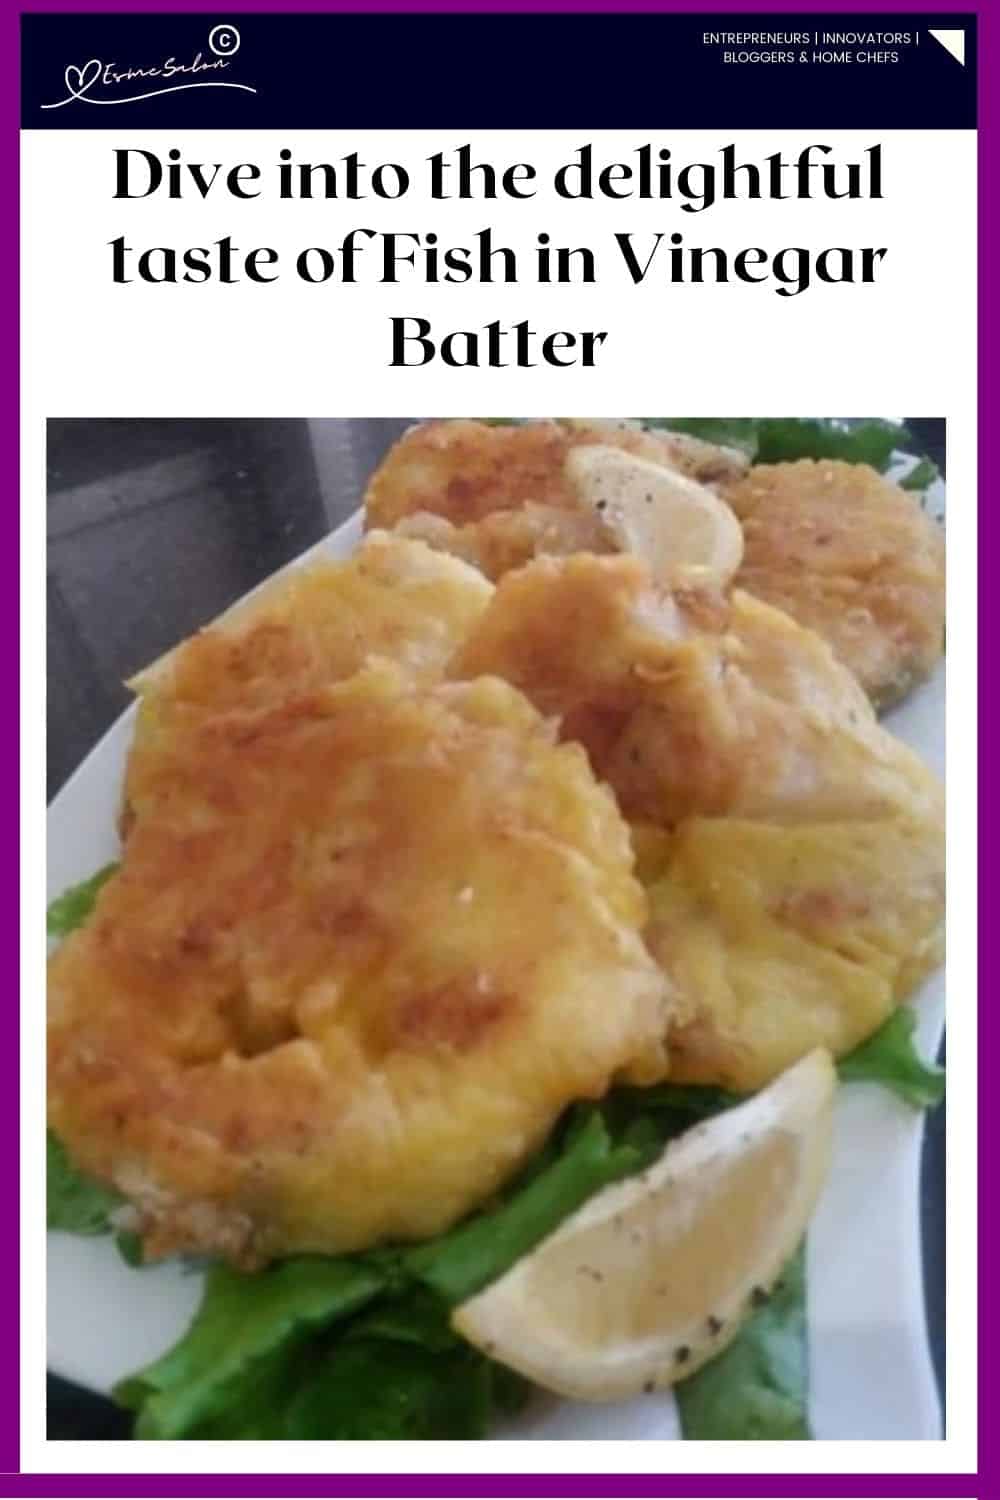 an image of Hake Fish in Vinegar Batter